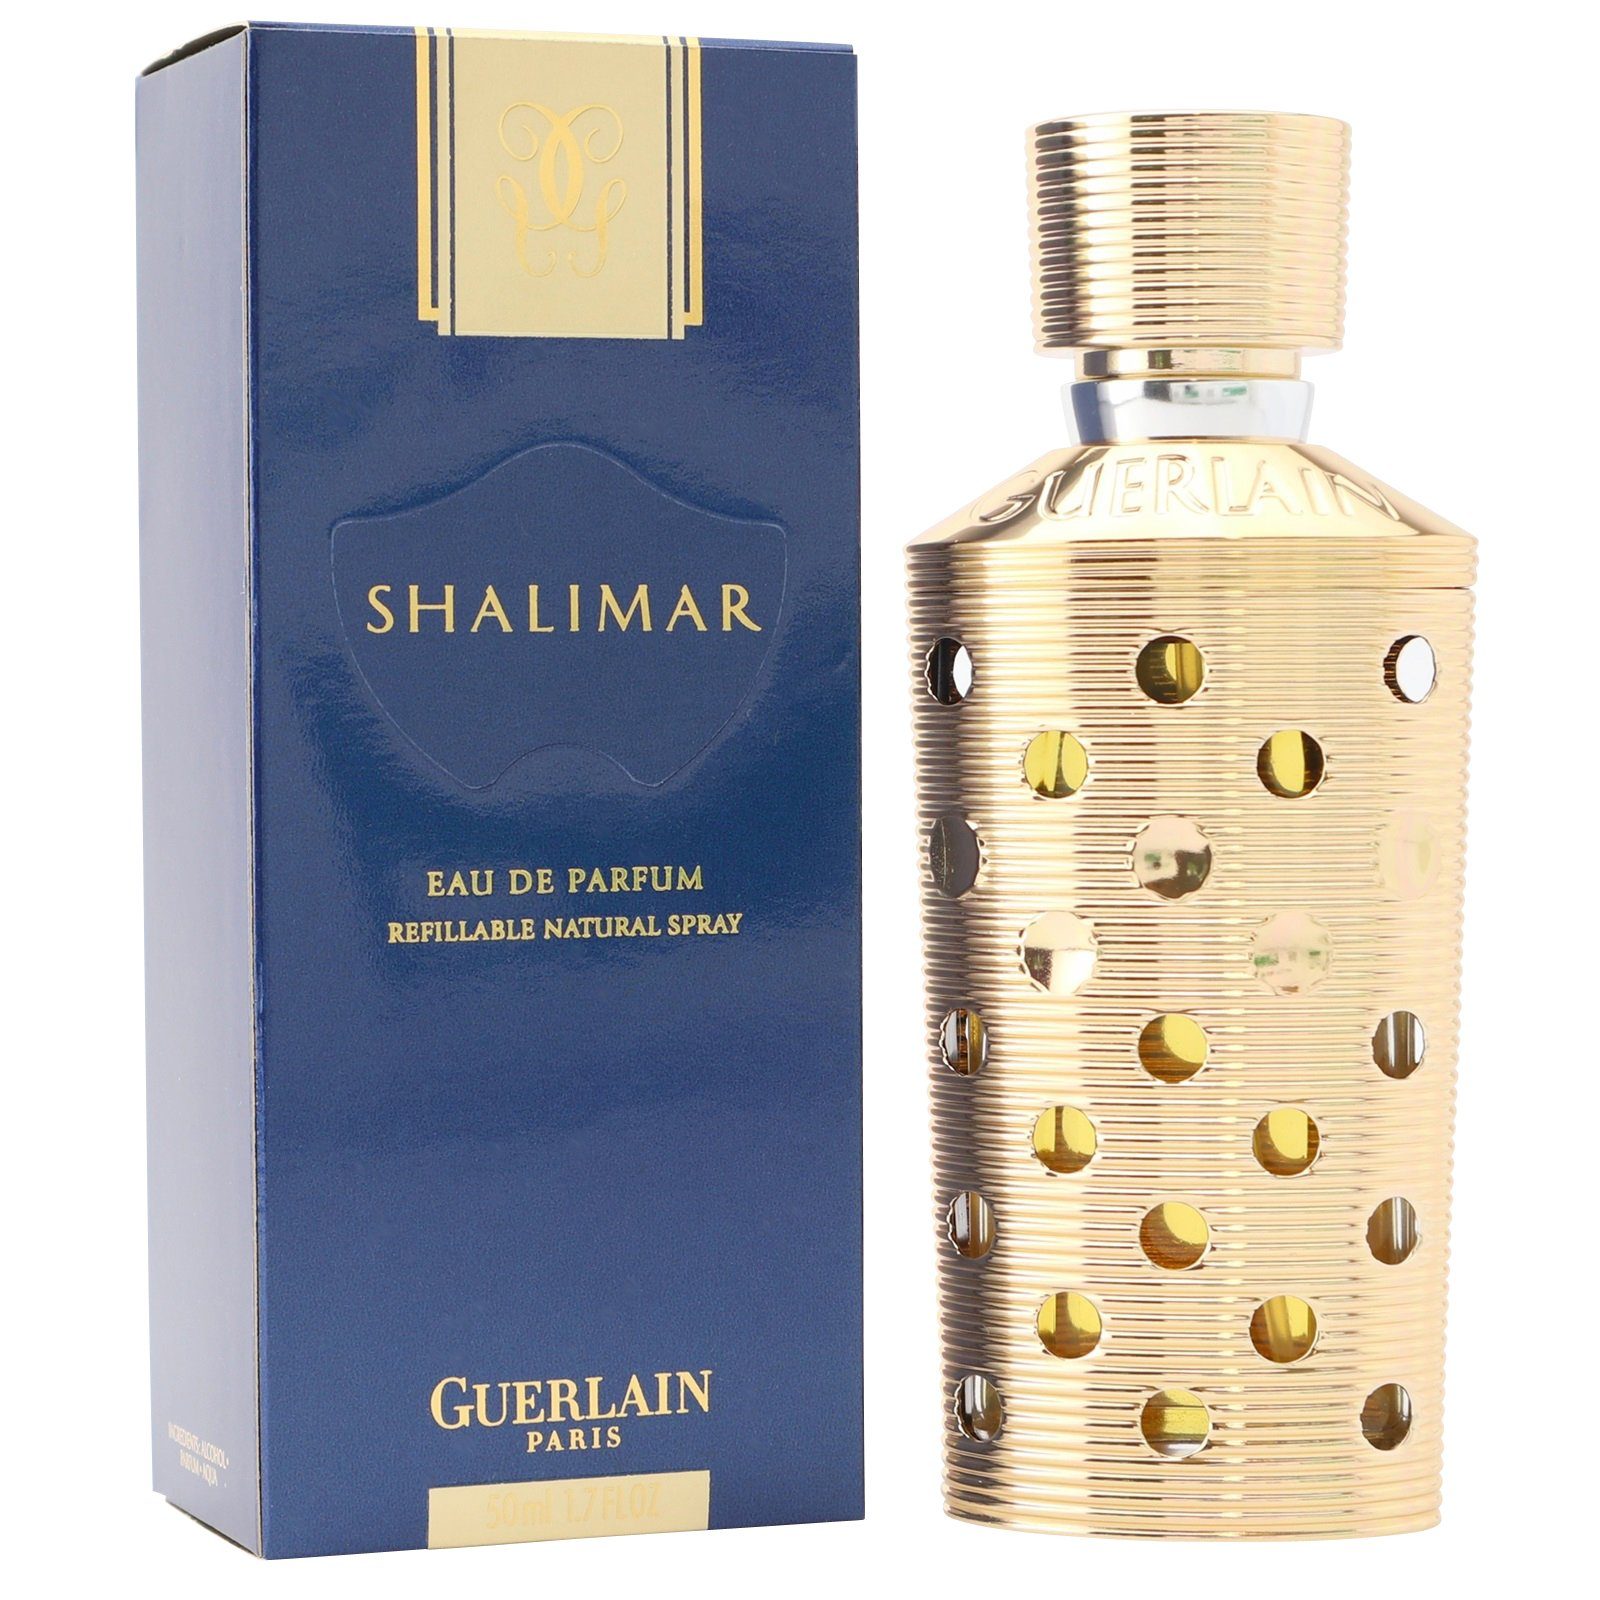 GUERLAIN Eau de Parfum rechargeable Eau Guerlain de refillable Shalimar Spray Parfum ml 50 